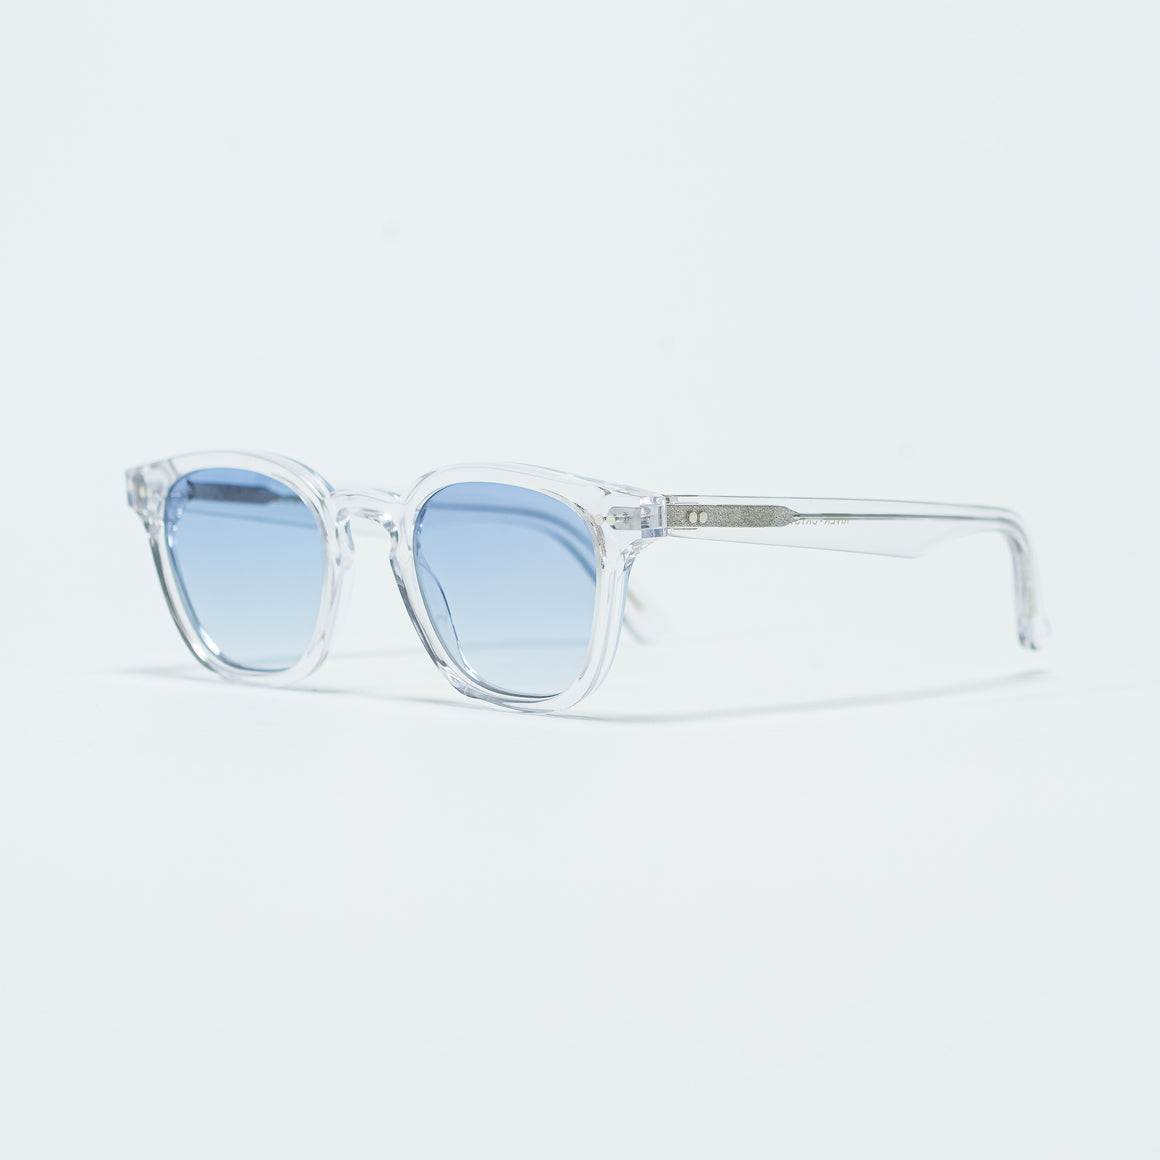 Monokel Eyewear - River - Crystal/Blue Gradient - UP THERE